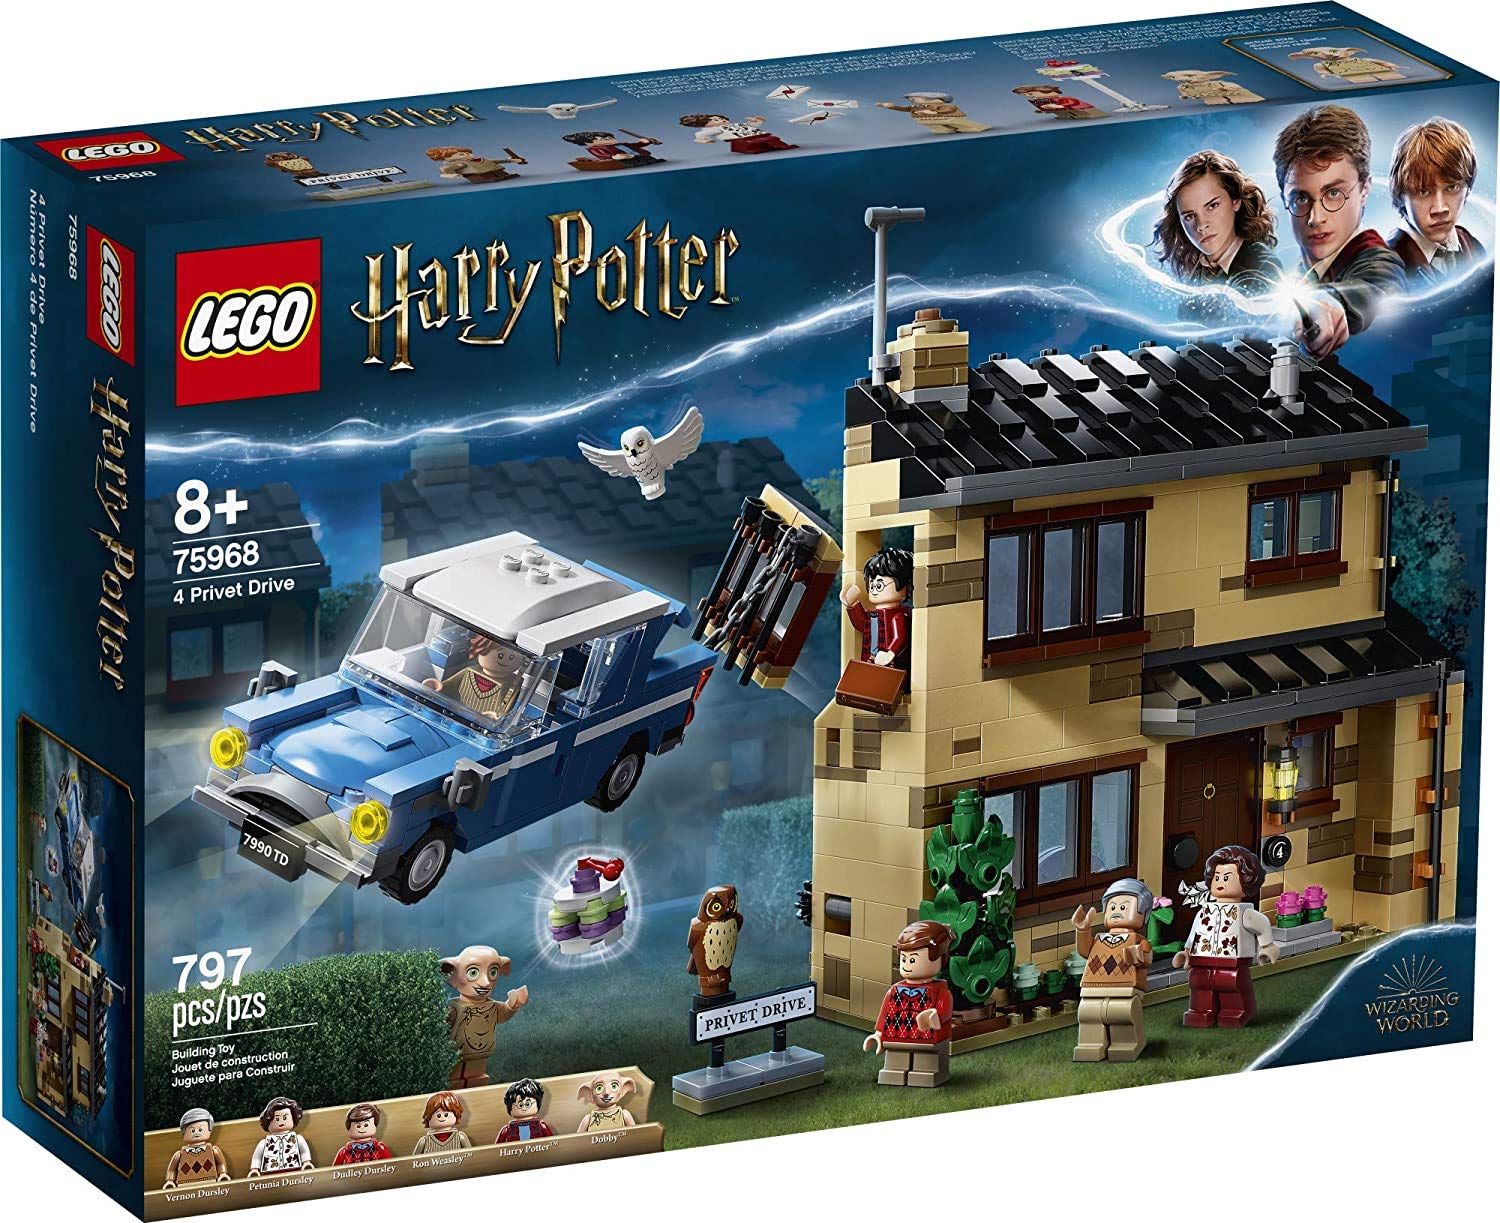 LEGO 哈利·波特 4 女贞路 75968 House 和福特安格利亚飞行汽车玩具，魔法世界礼物，适合儿童、...